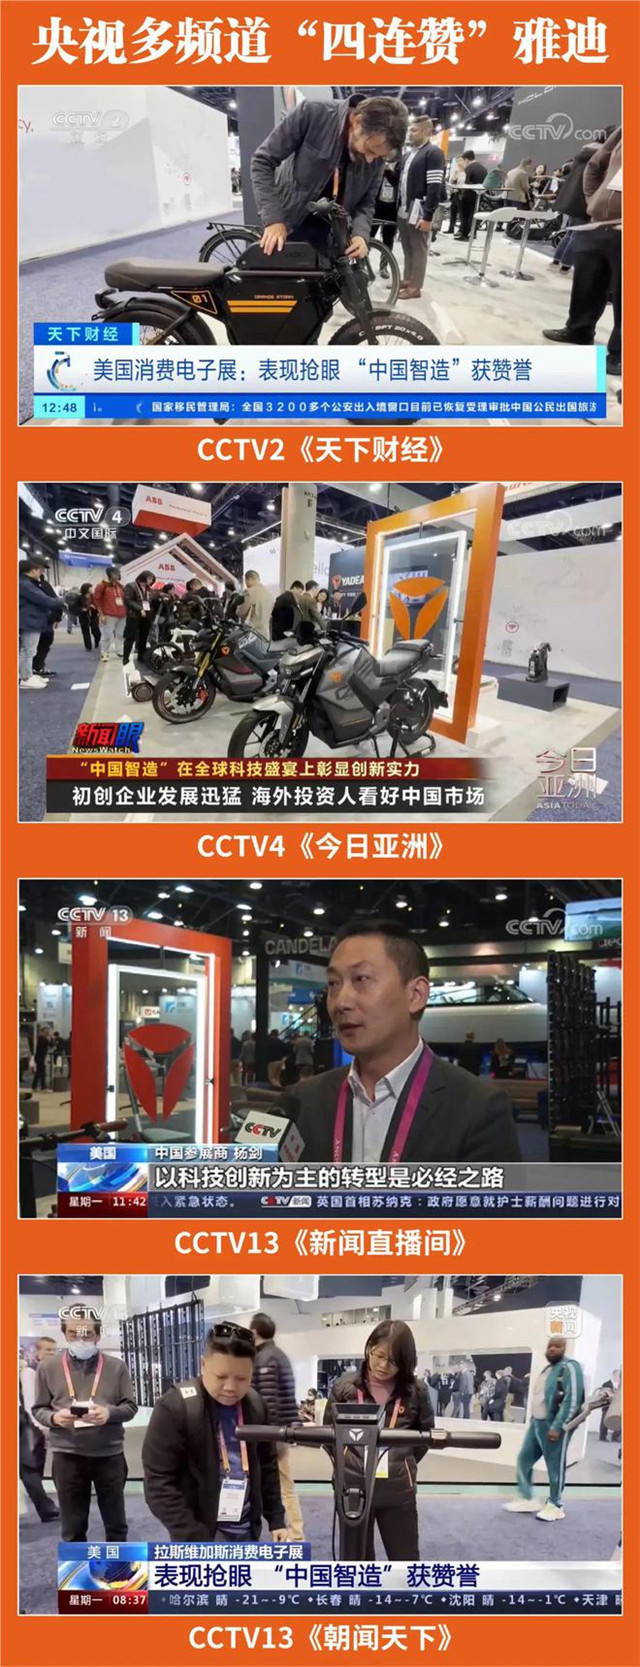 全球焦點雅迪獲央視多頻道“四連贊”，成就中國品牌閃耀世界舞臺